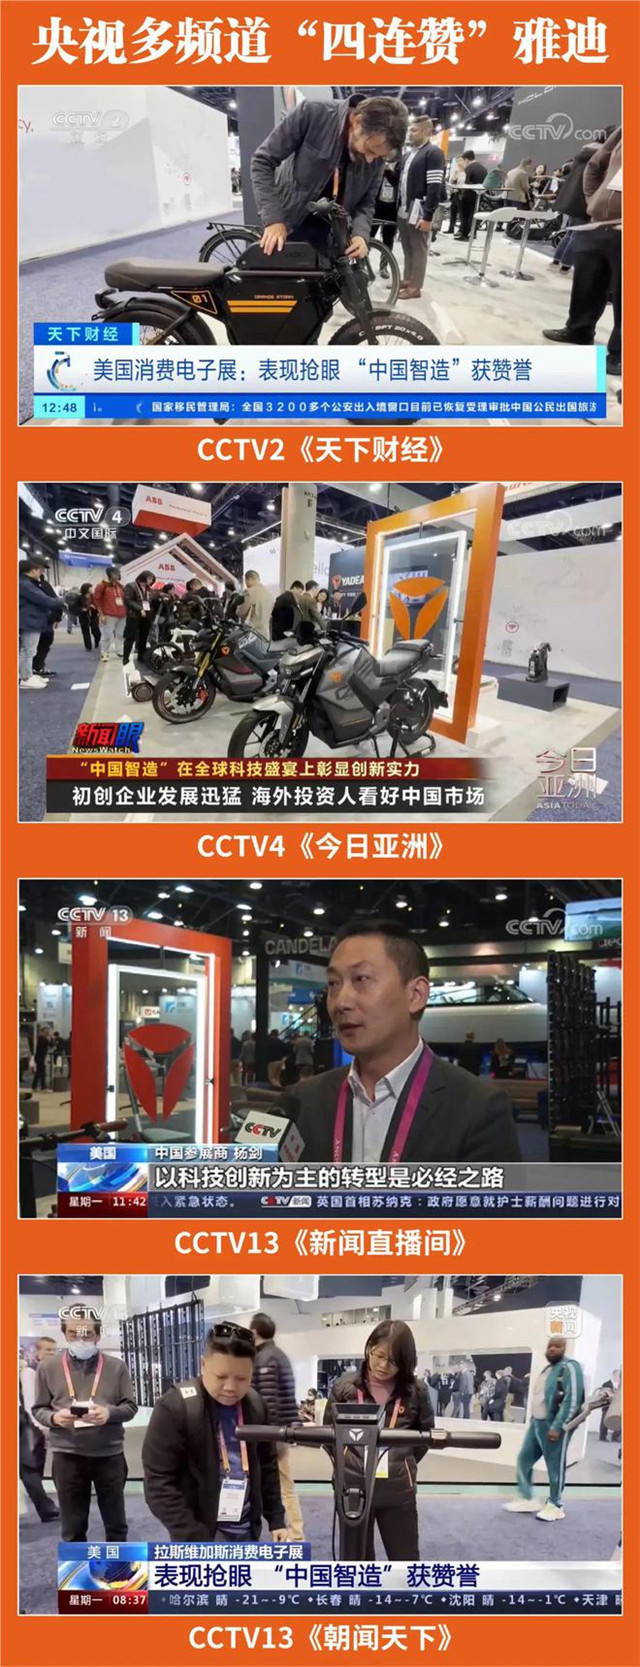 全球焦點雅迪獲央視多頻道“四連贊”，成就中國品牌閃耀世界舞臺